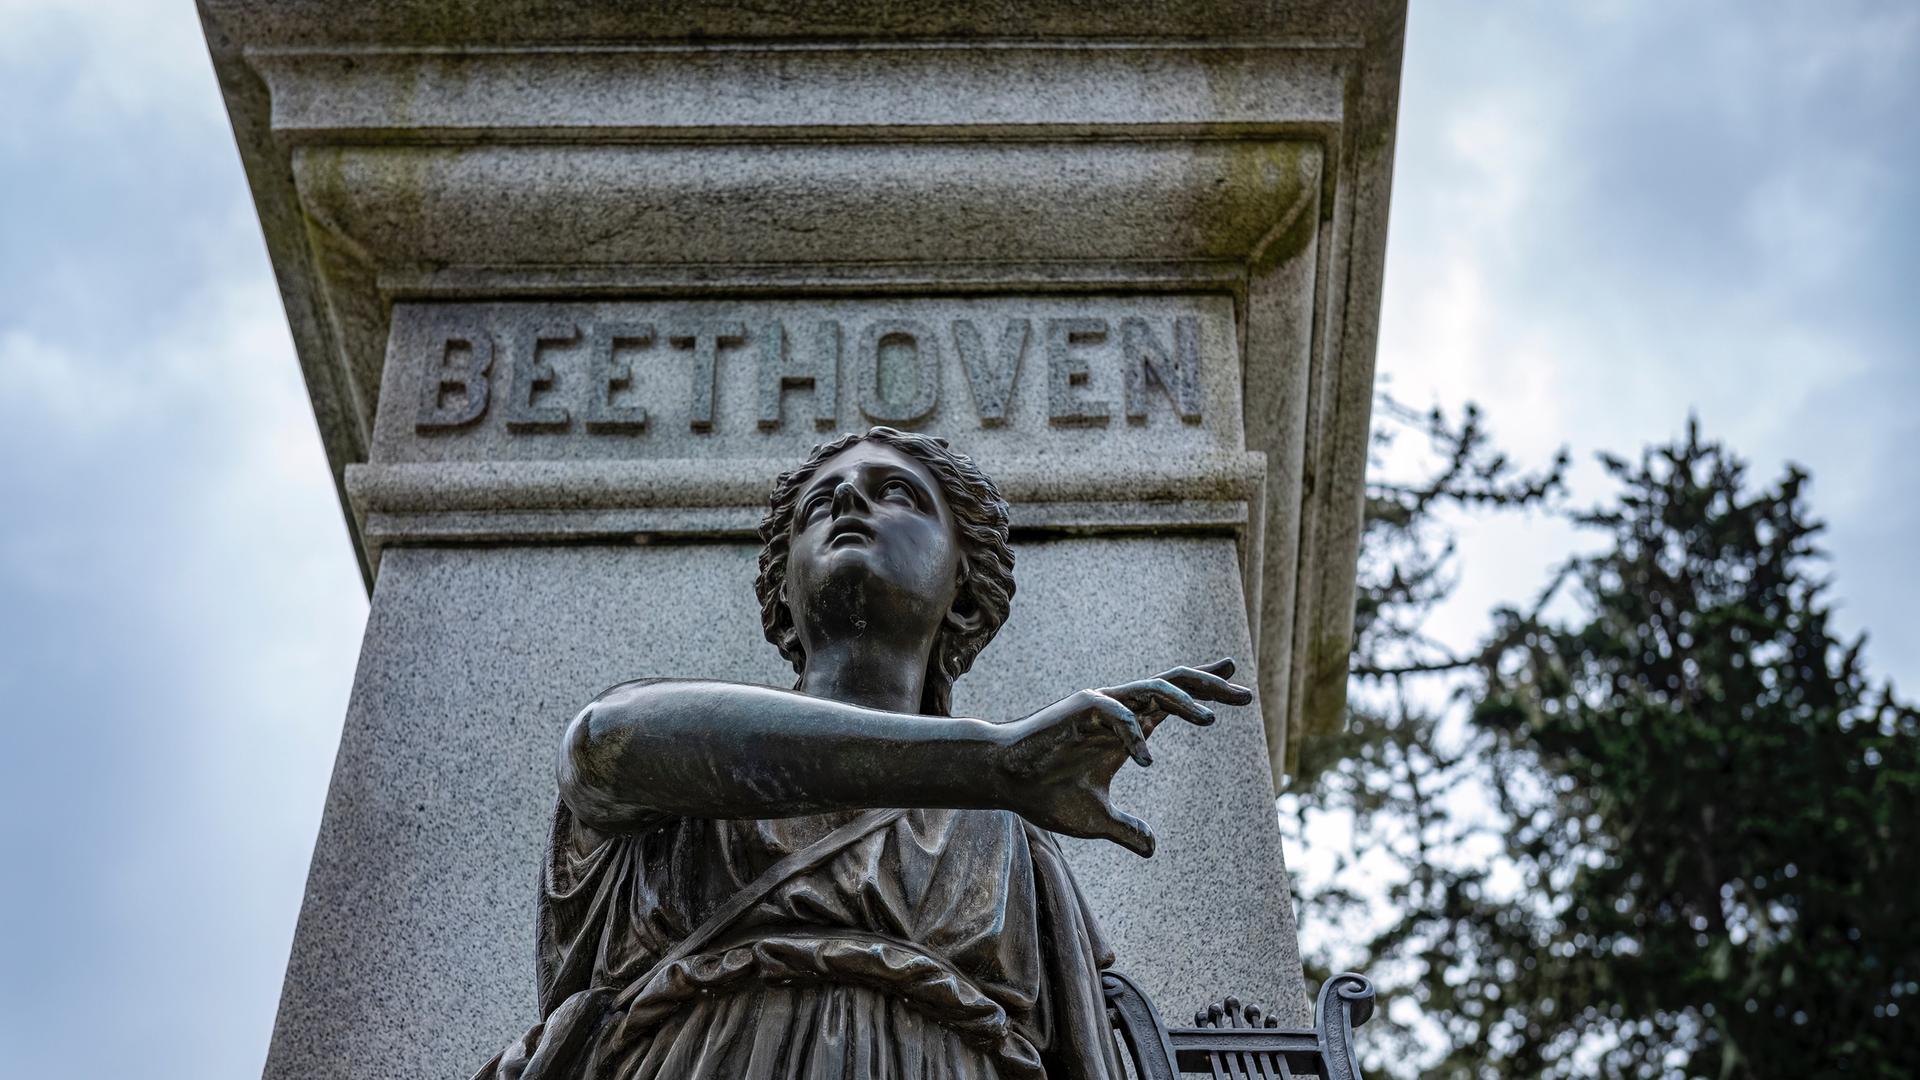 Eine weibliche Figur als Teil eines Denkmals mit dem Schriftzug "Beethoven".